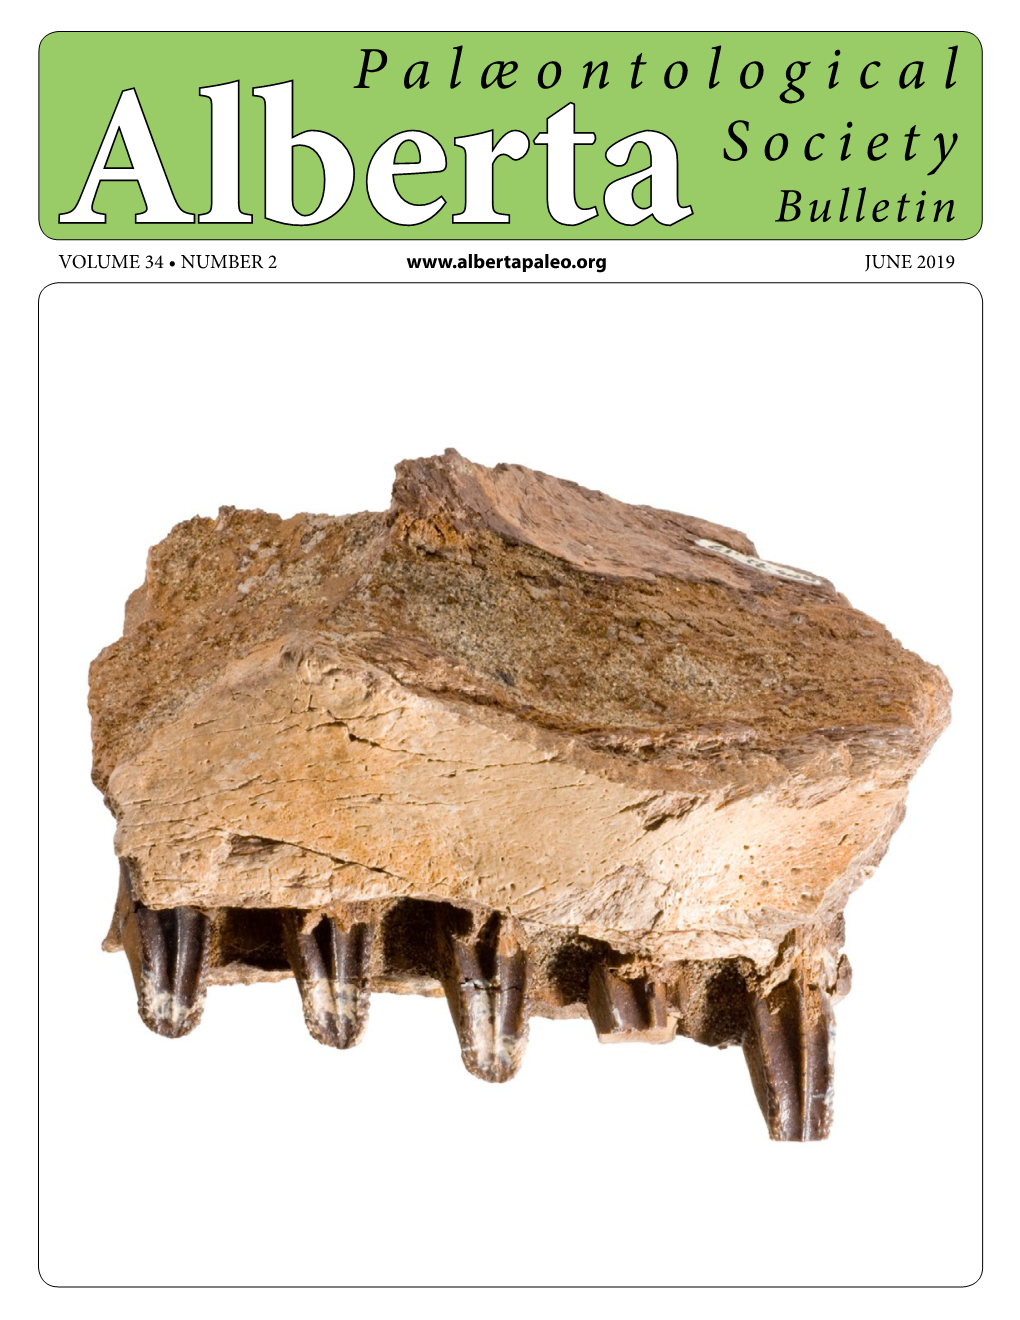 Alberta Palaeontological Society Bulletin Vol. 34, No. 2, June 2019